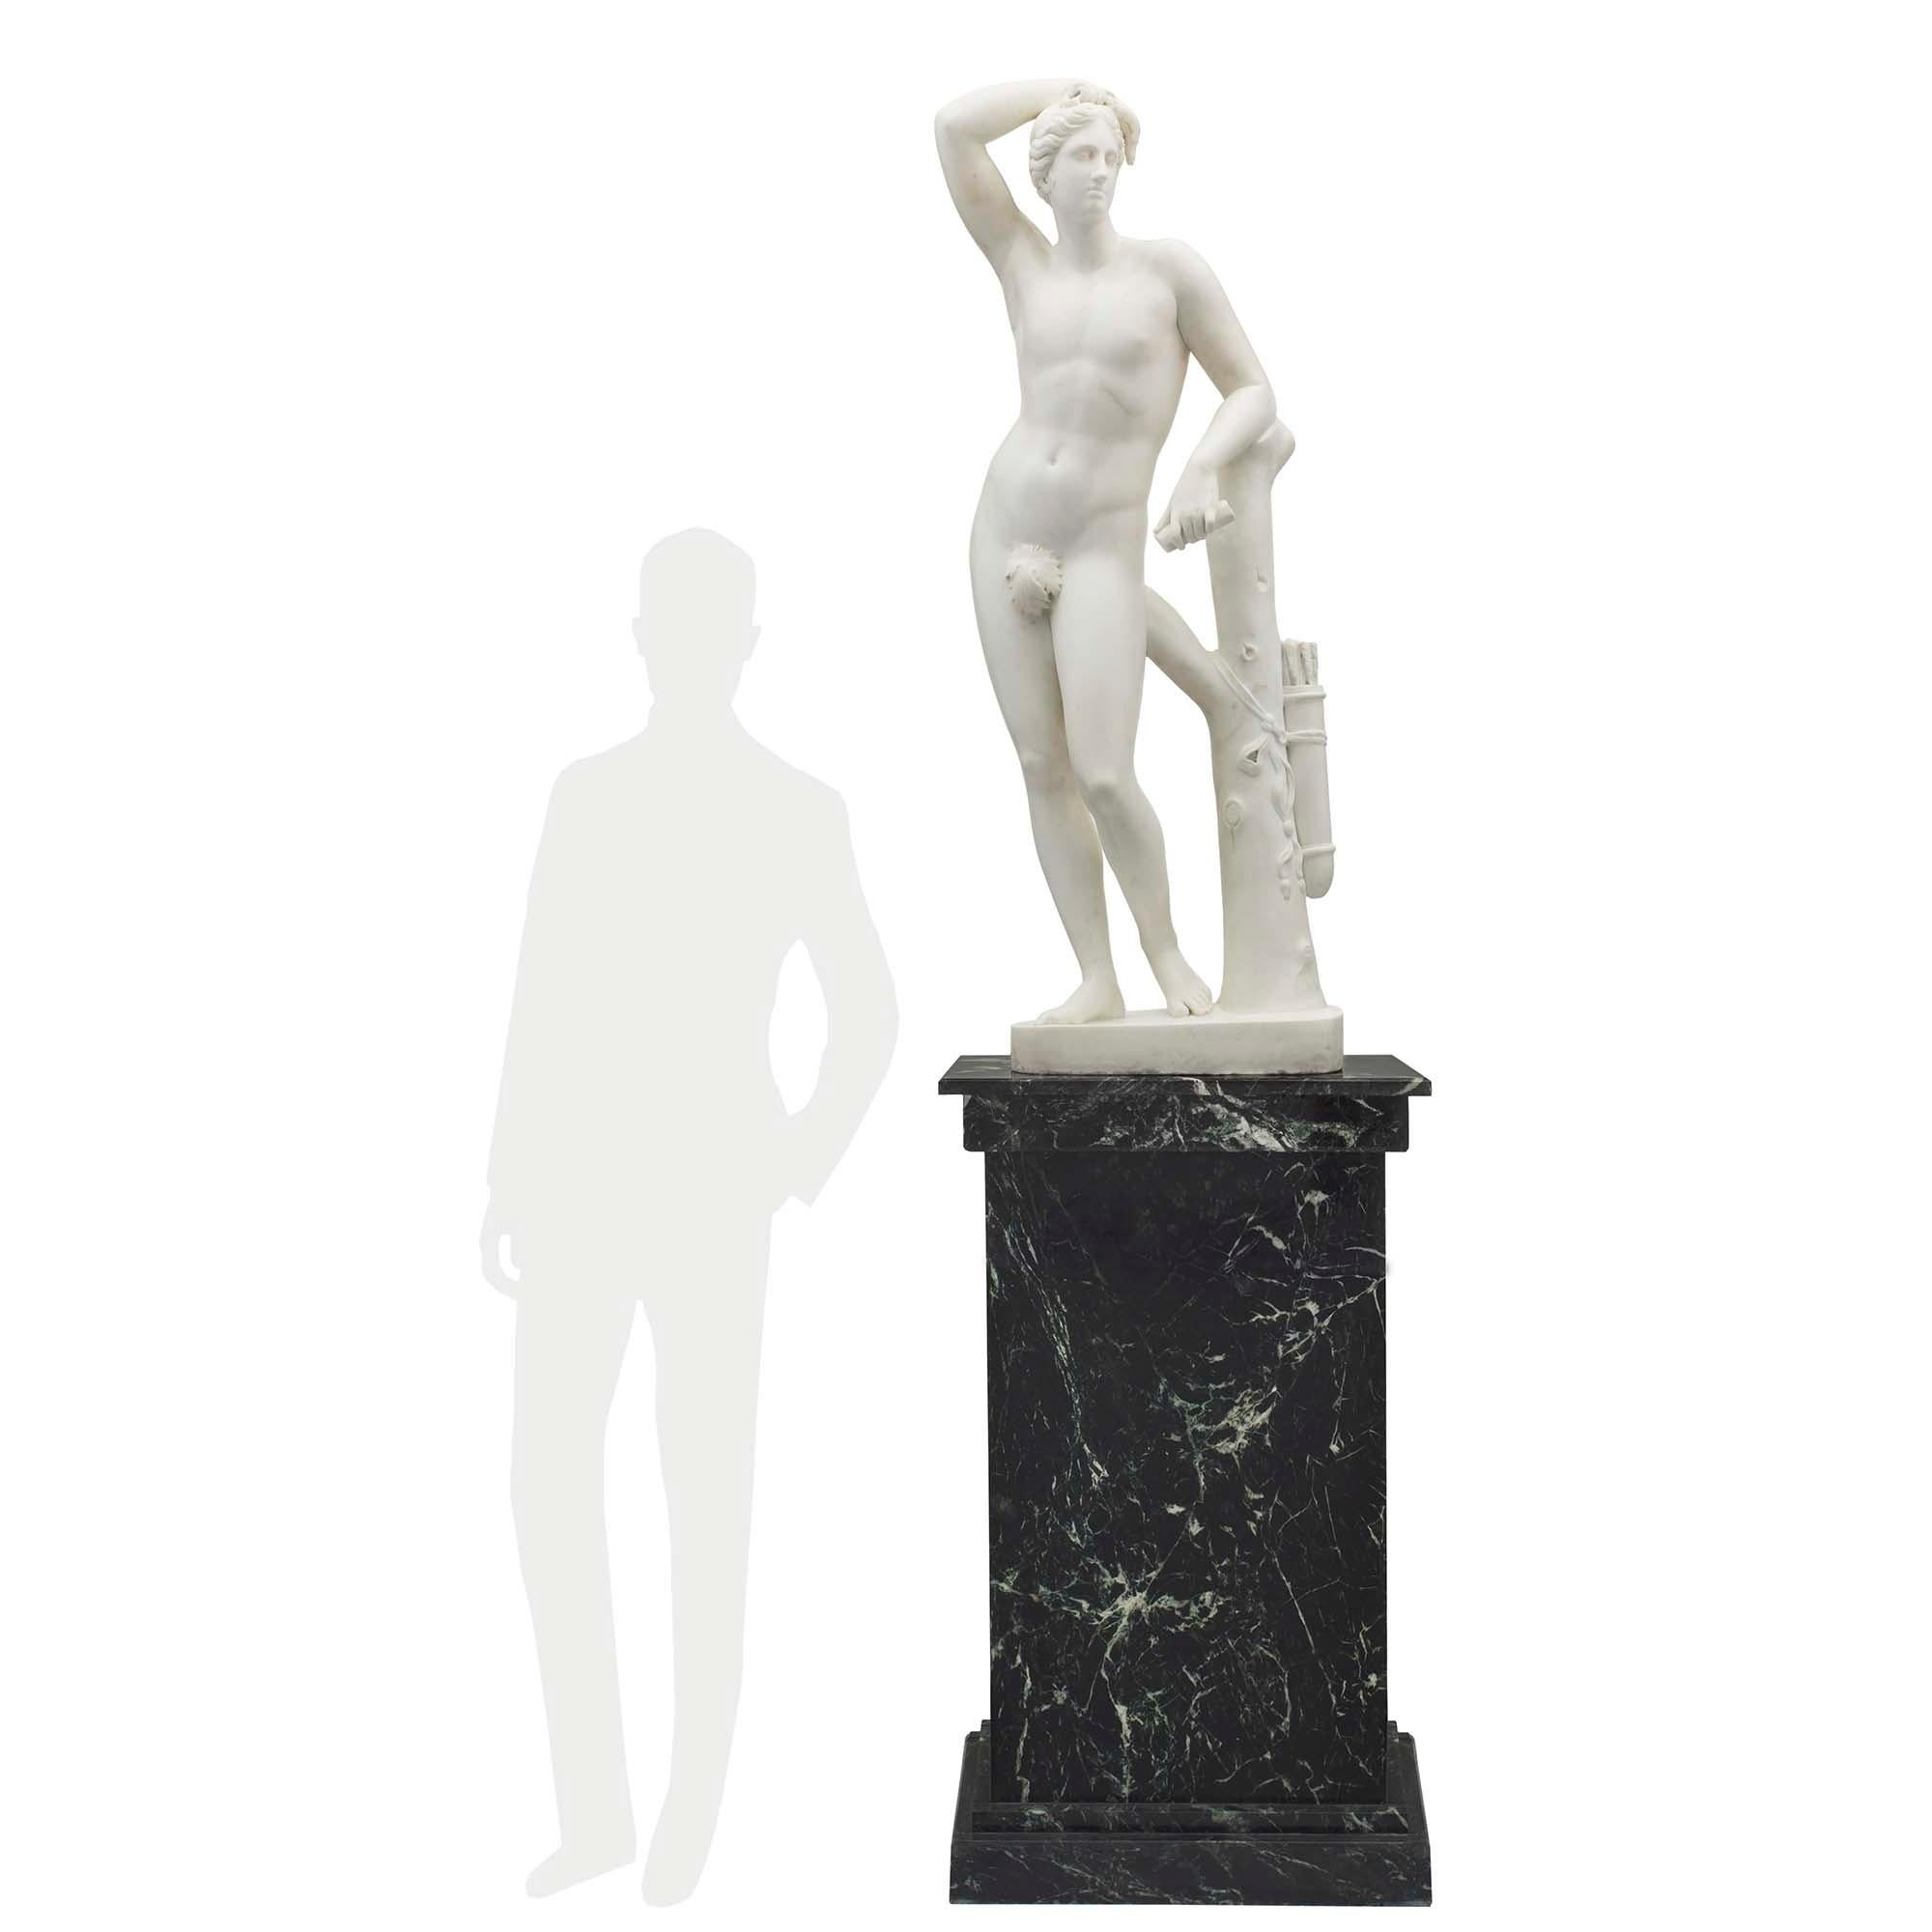 Statue d'Apollon en marbre blanc de Carrare, néoclassique, datant du milieu du XIXe siècle, signée V Livi Ejegui Carrara, 1845. La Statue est surélevée par une base ovale avec un tronc d'arbre où pend son carquois, attaché par un arc finement